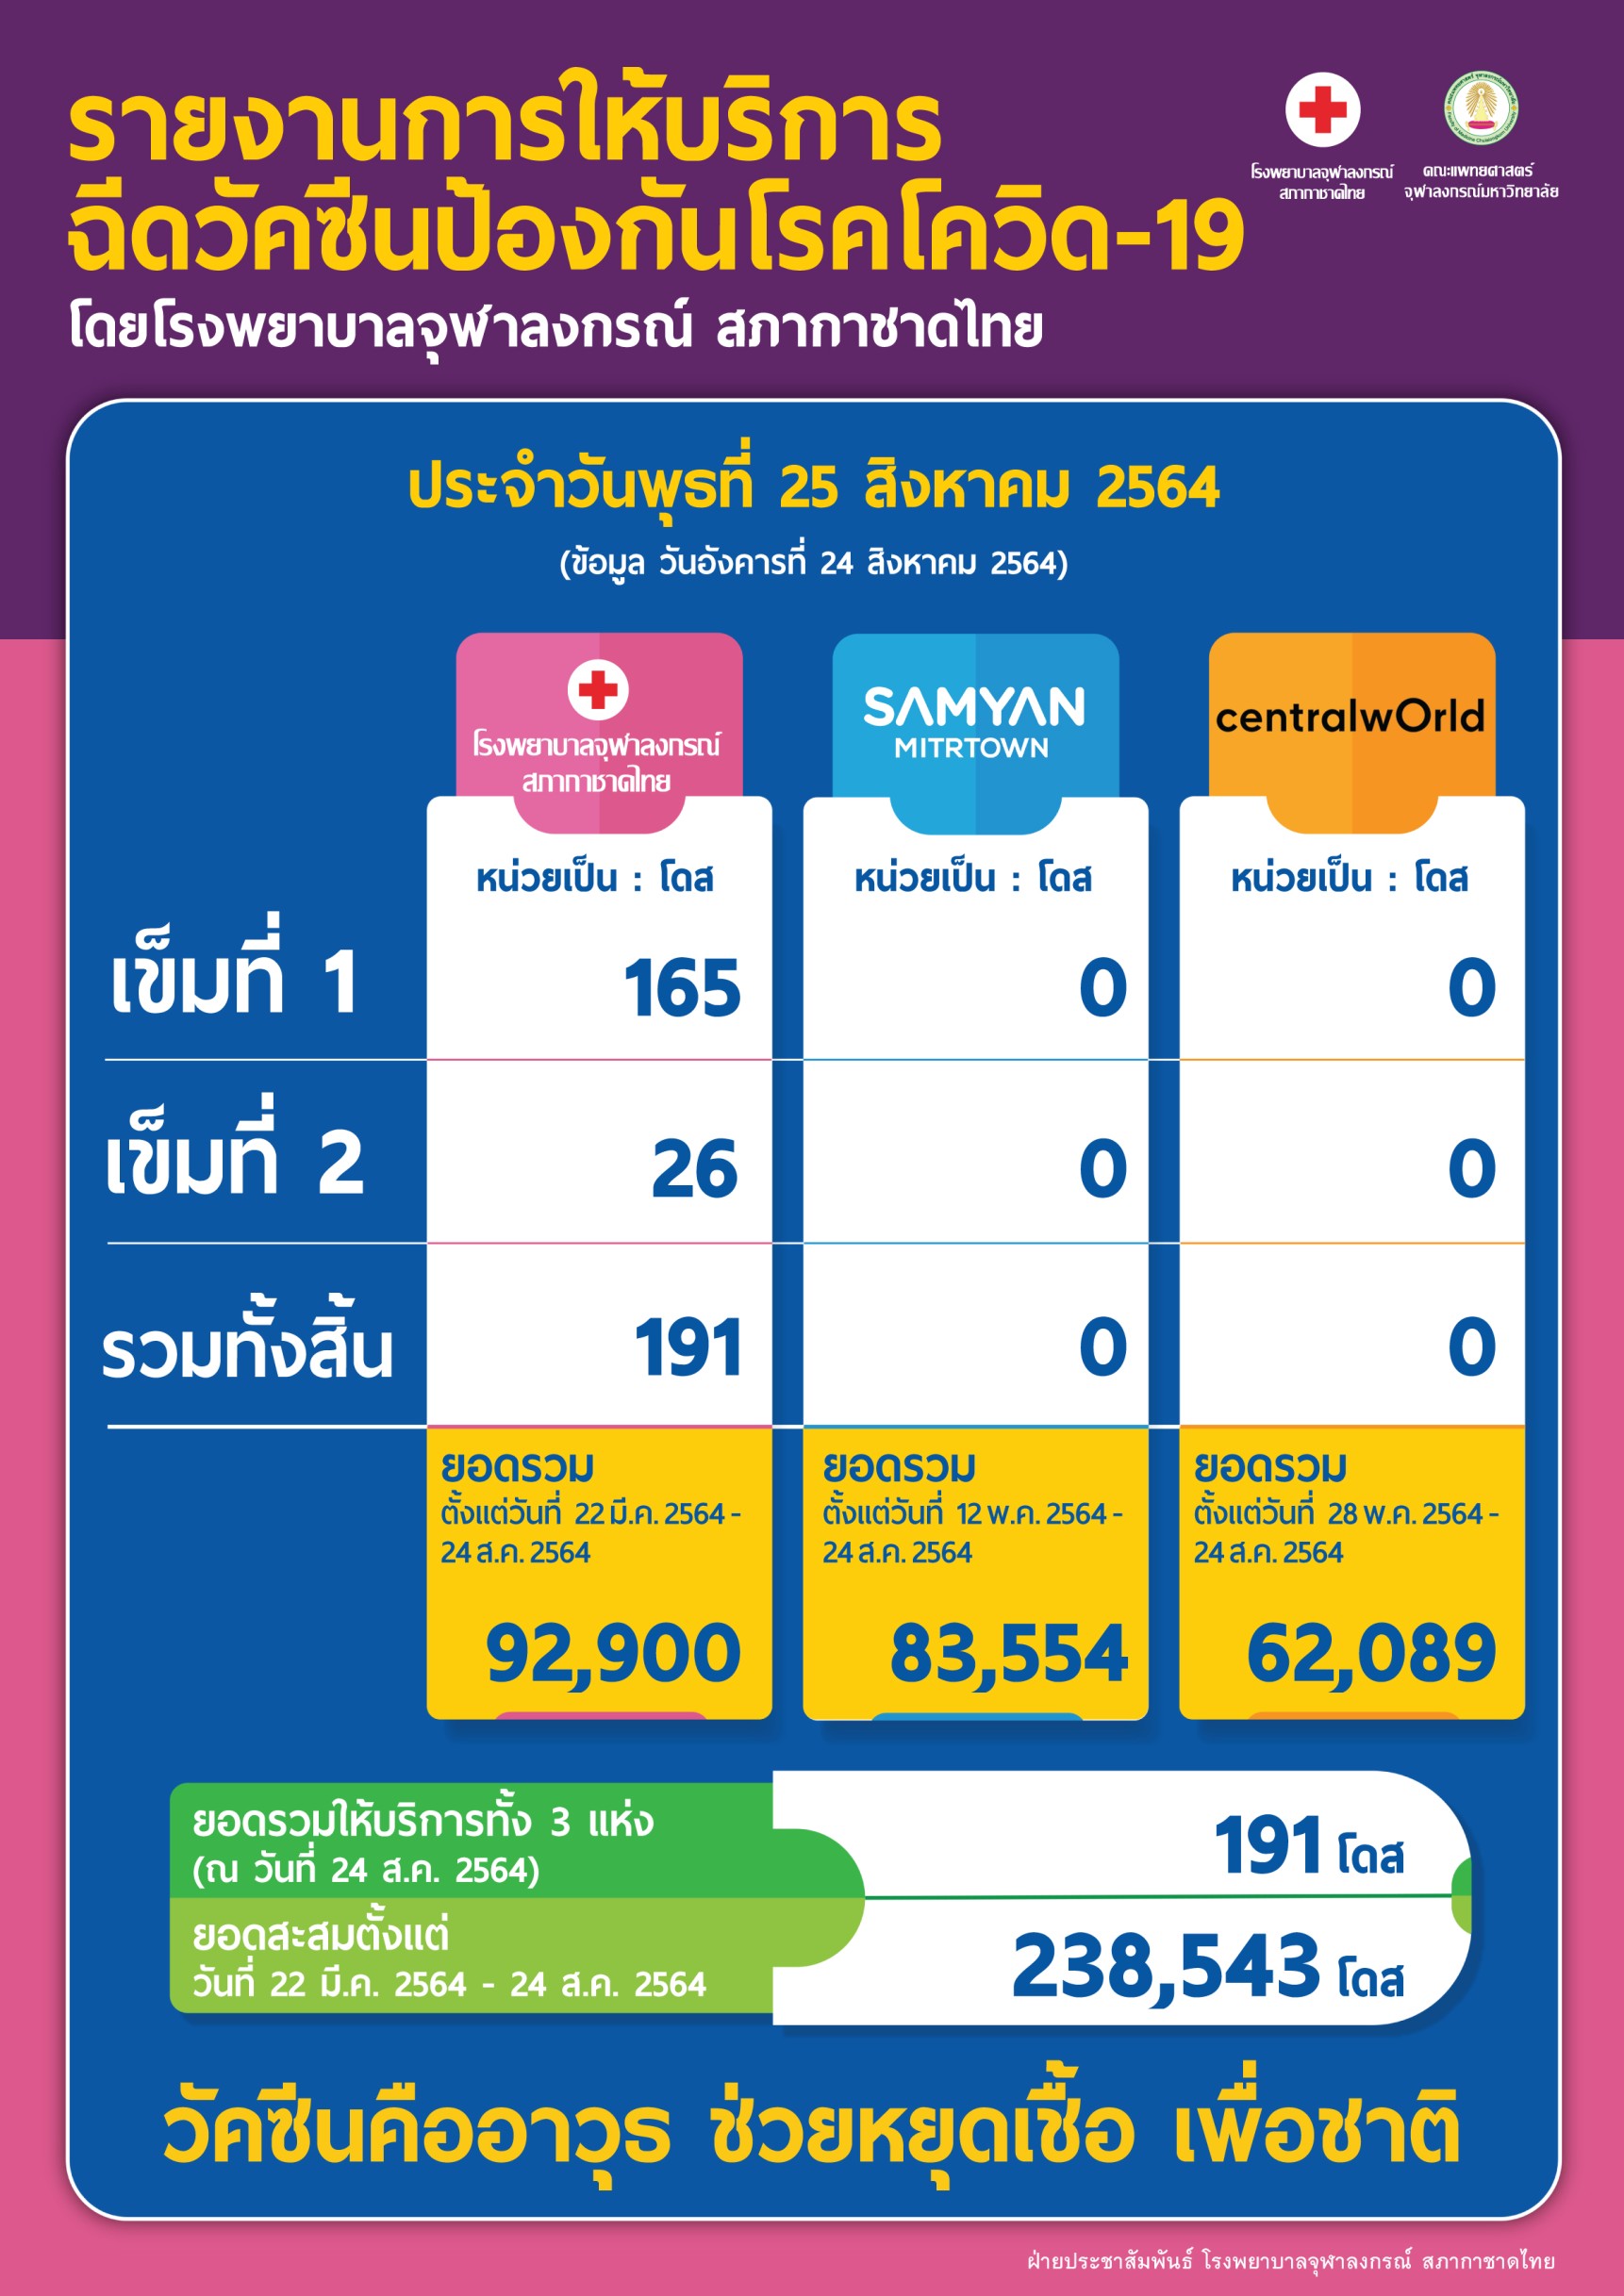 รายงานการให้บริการ ฉีดวัคซีนป้องกันโรคโควิด-19 โดยโรงพยาบาลจุฬาลงกรณ์ สภากาชาดไทย ประจำวันพุธที่ 25 สิงหาคม 2564